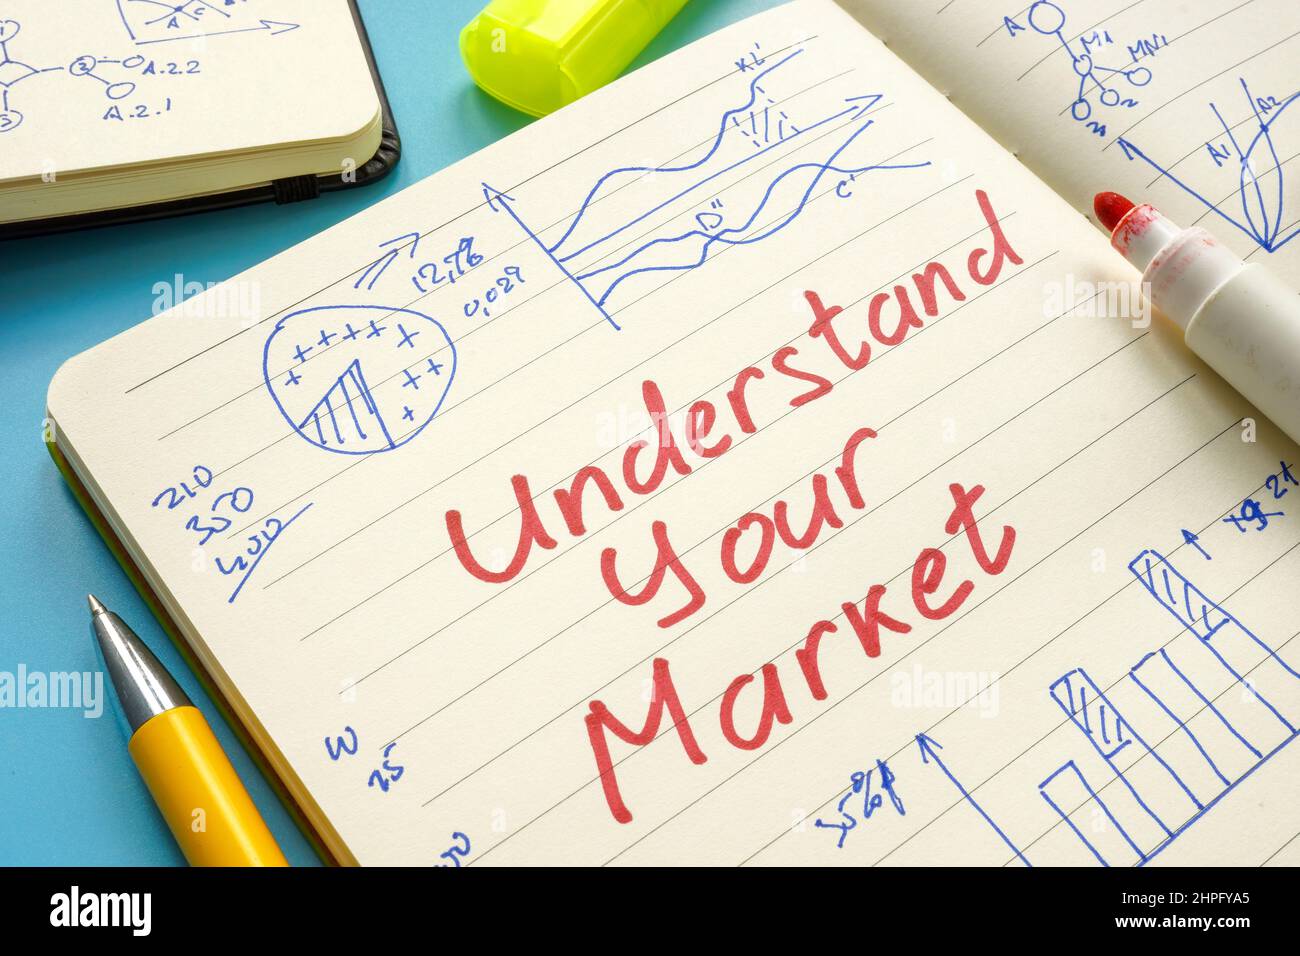 Verstehen Sie Ihre Markteinschreibung und Marketing-Charts und Recherchen auf der Seite. Stockfoto